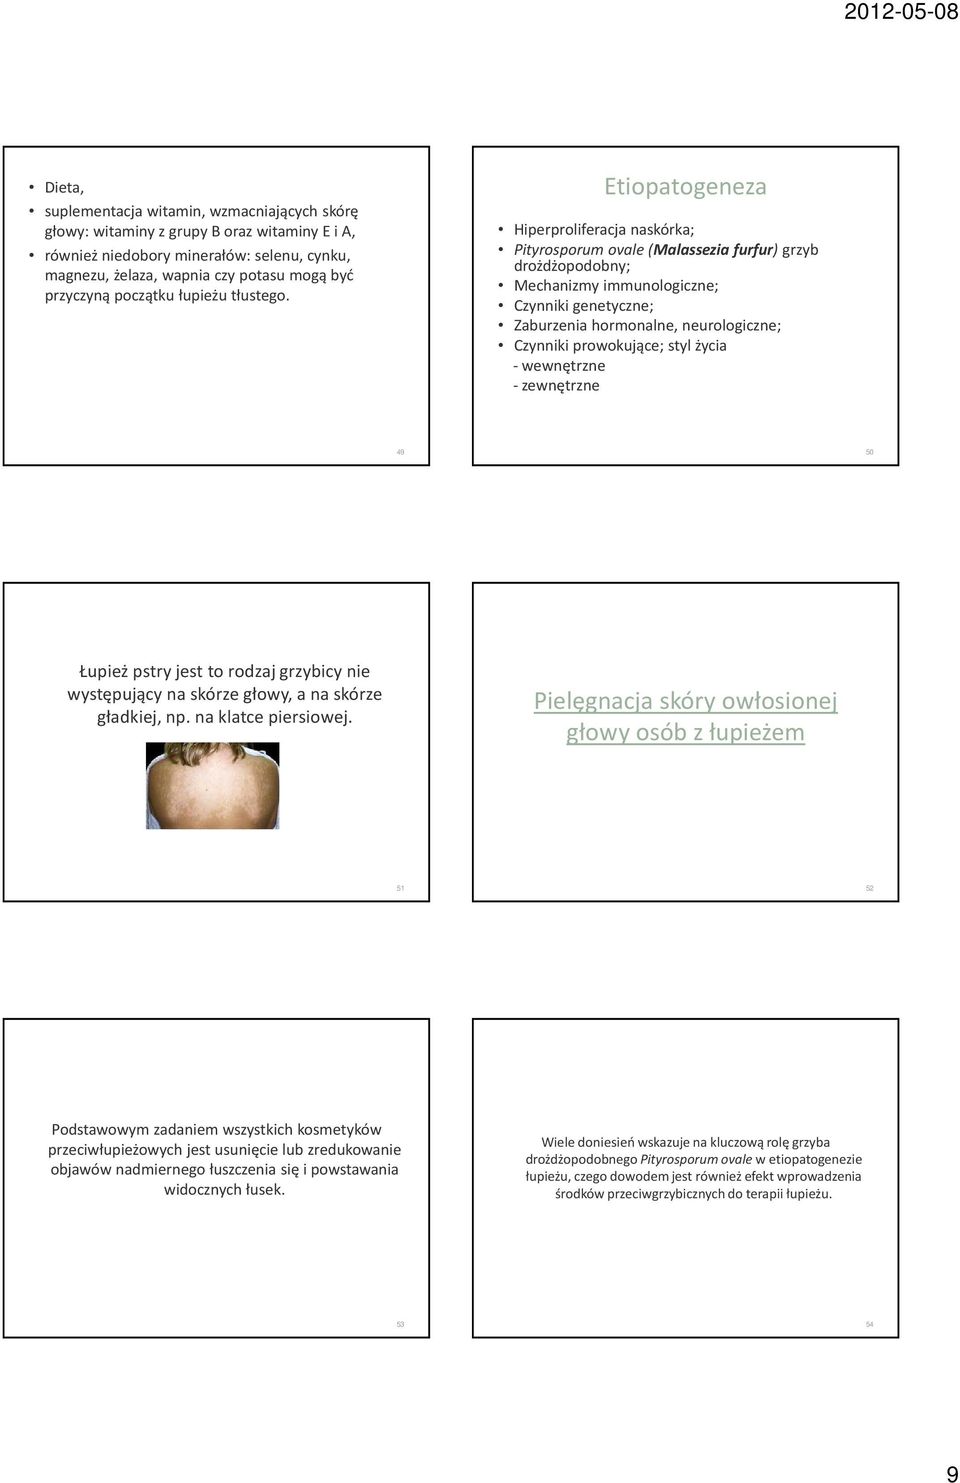 Etiopatogeneza Hiperproliferacja naskórka; Pityrosporumovale(Malassezia furfur) grzyb drożdżopodobny; Mechanizmy immunologiczne; Czynniki genetyczne; Zaburzenia hormonalne, neurologiczne; Czynniki